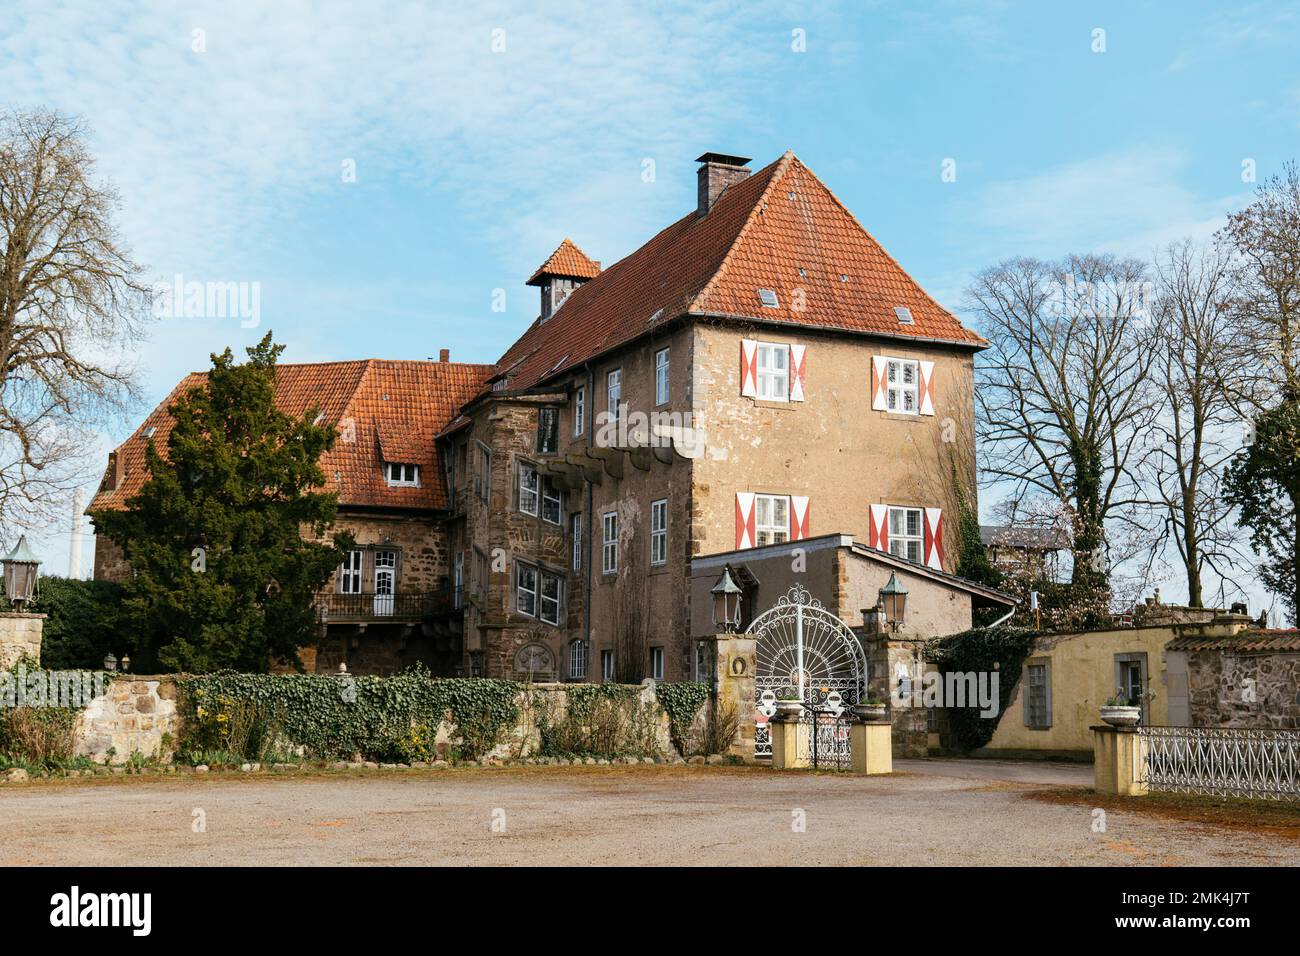 Historisches Schloss in Petershagen, heute als Hotel und Restaurant genutzt. Stockfoto